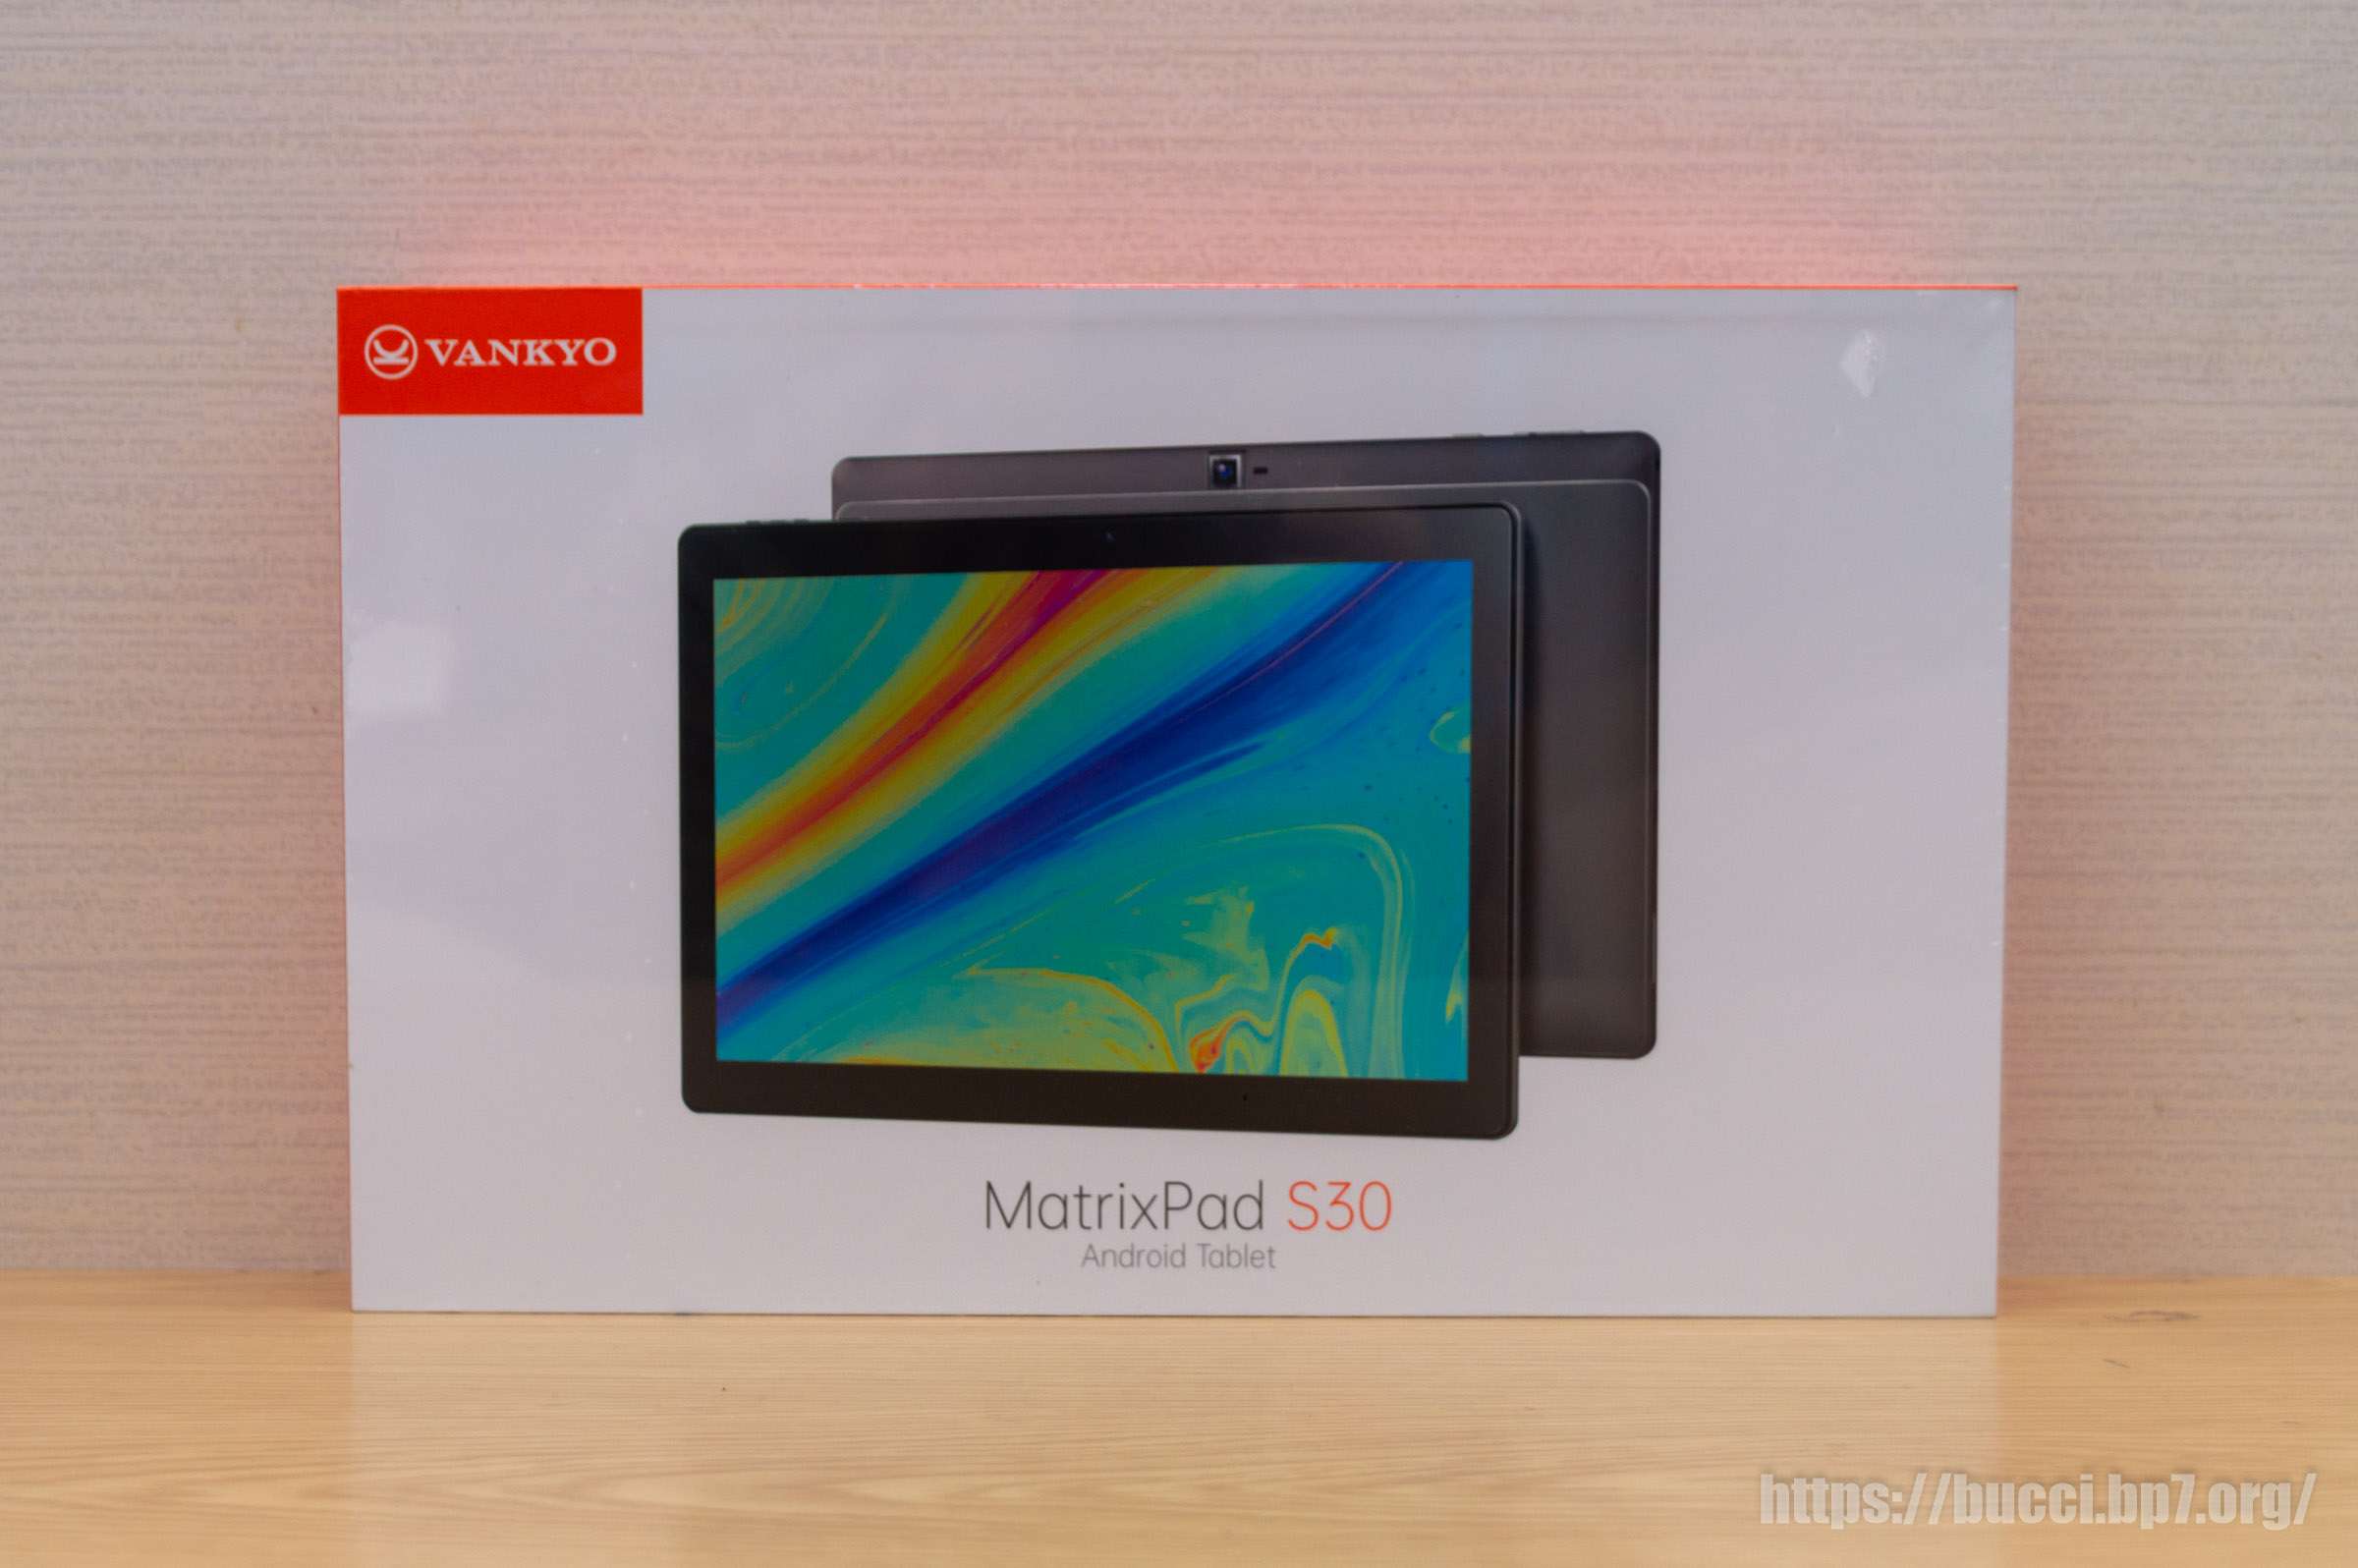 VANKYO MatrixPad S30 Androidタブレット - Androidタブレット本体